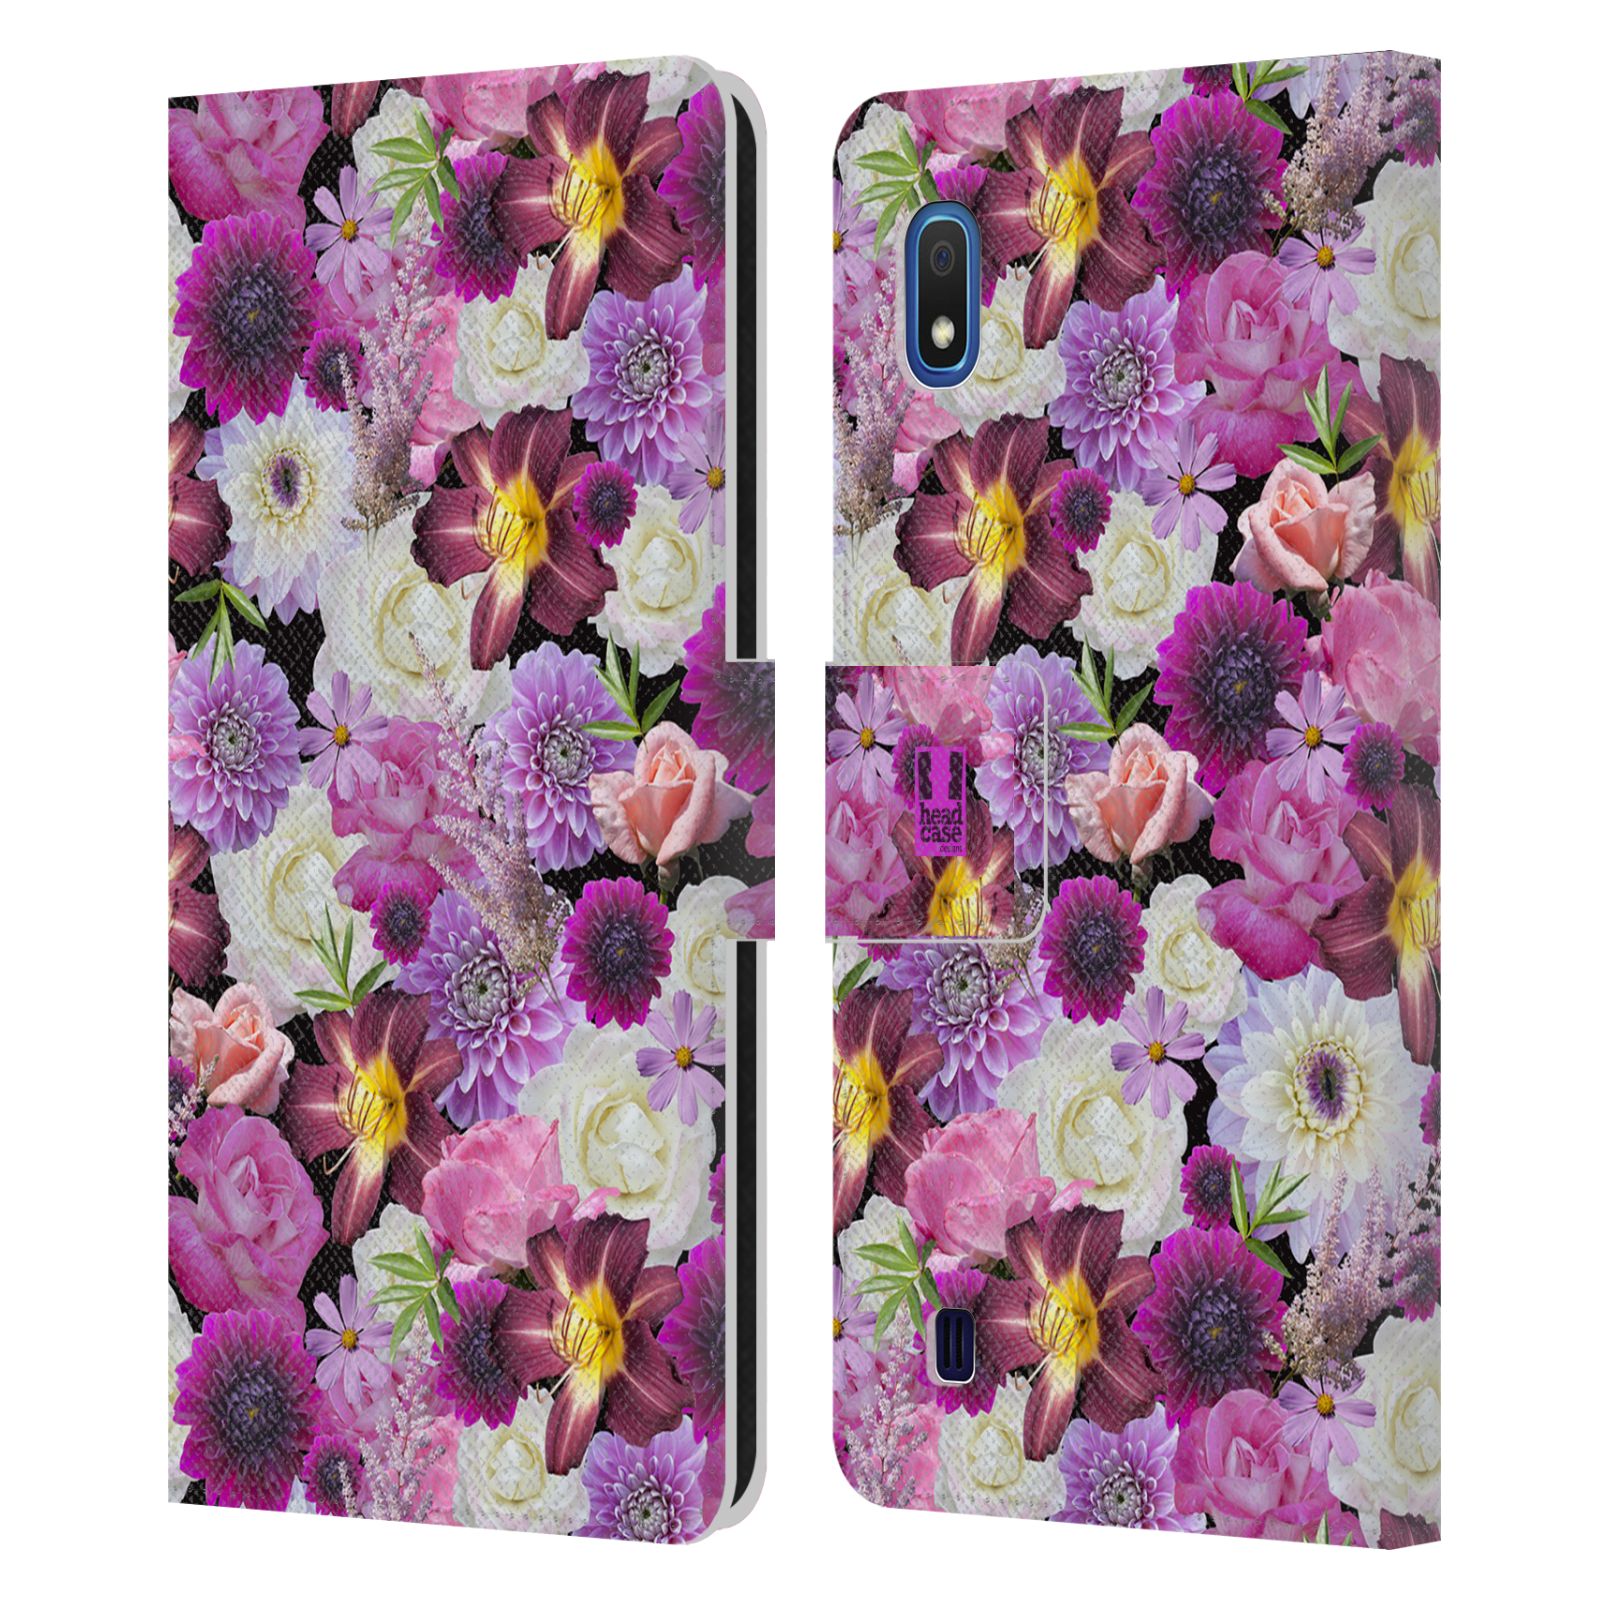 Pouzdro na mobil Samsung Galaxy A10 květy foto fialová a bílá